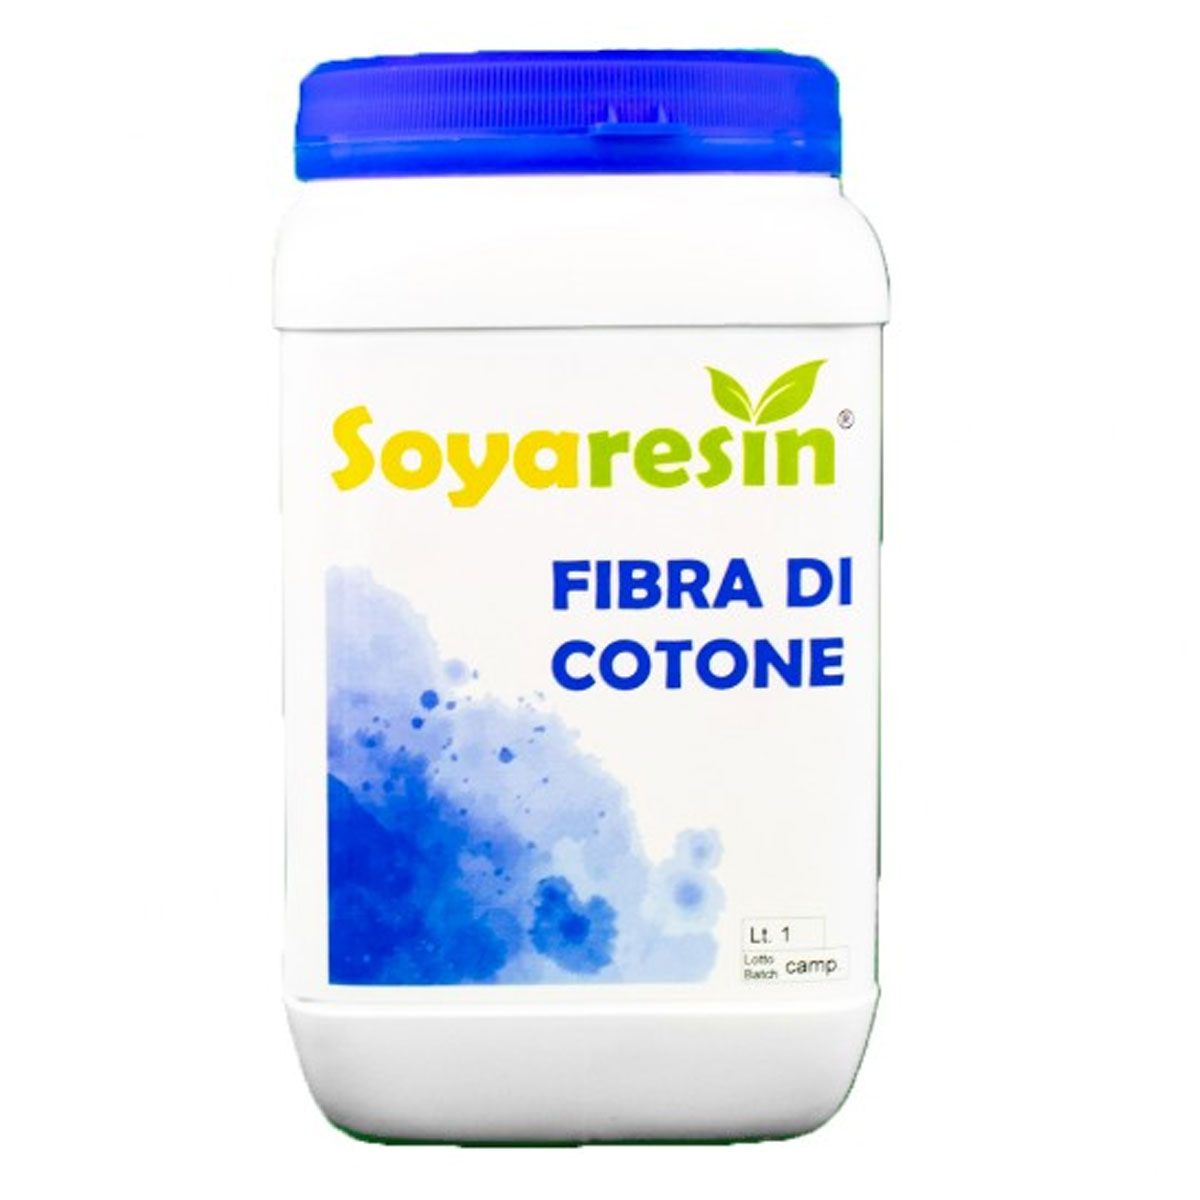 fibra-cotone-1